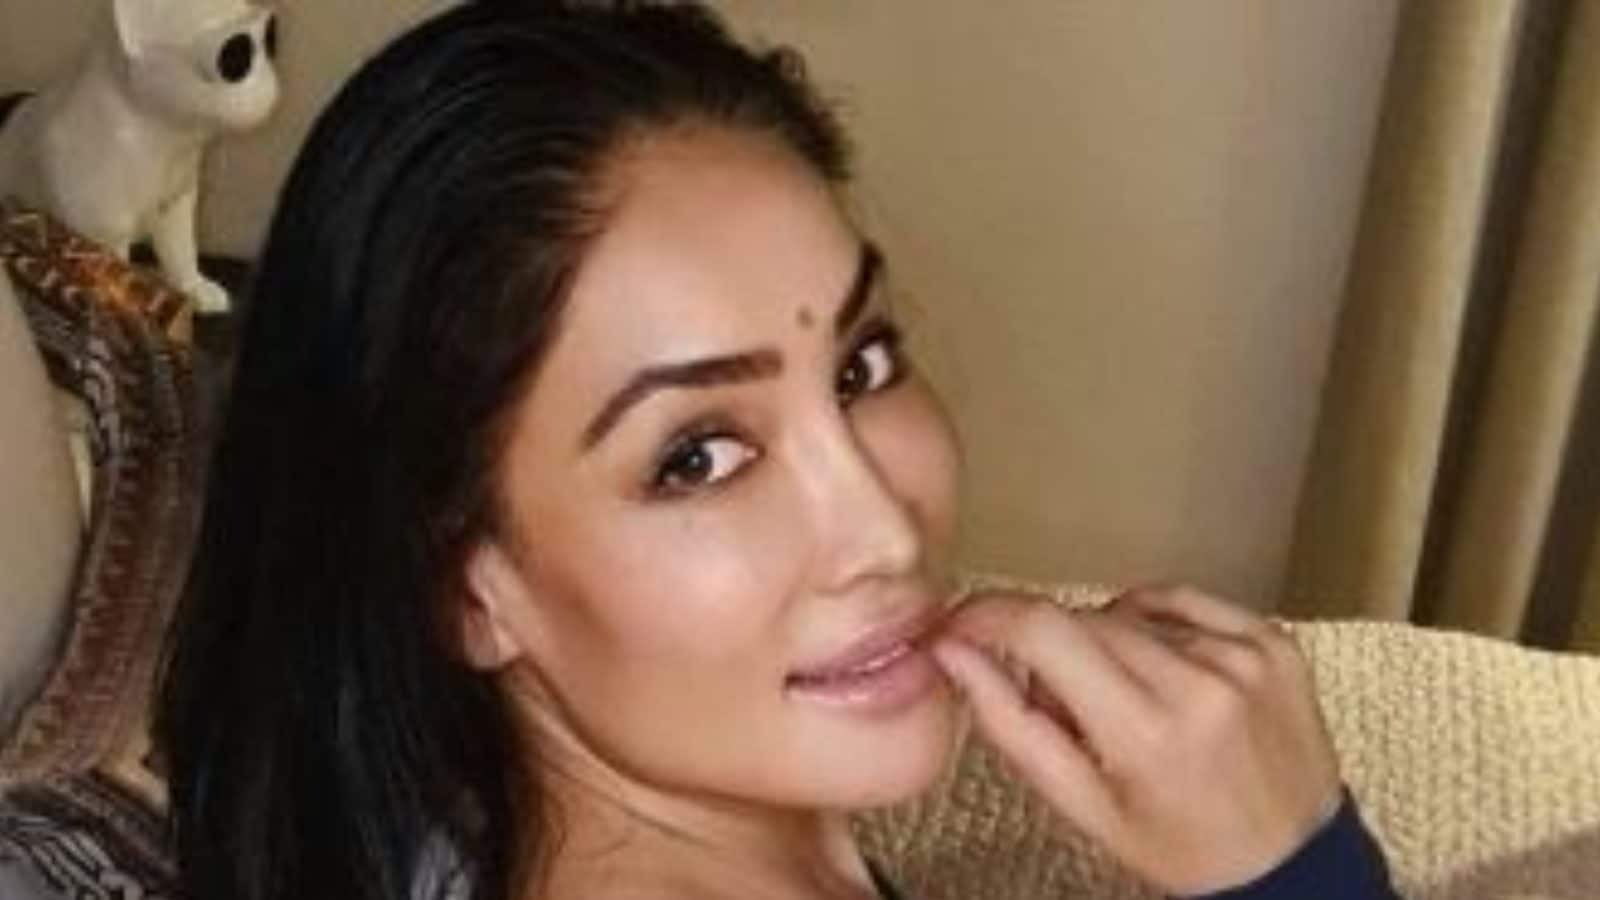 Fuckxxx Disha Patani - Sofia Hayat Says Many Bollywood Aspirants Tricked into Doing Porn - News18